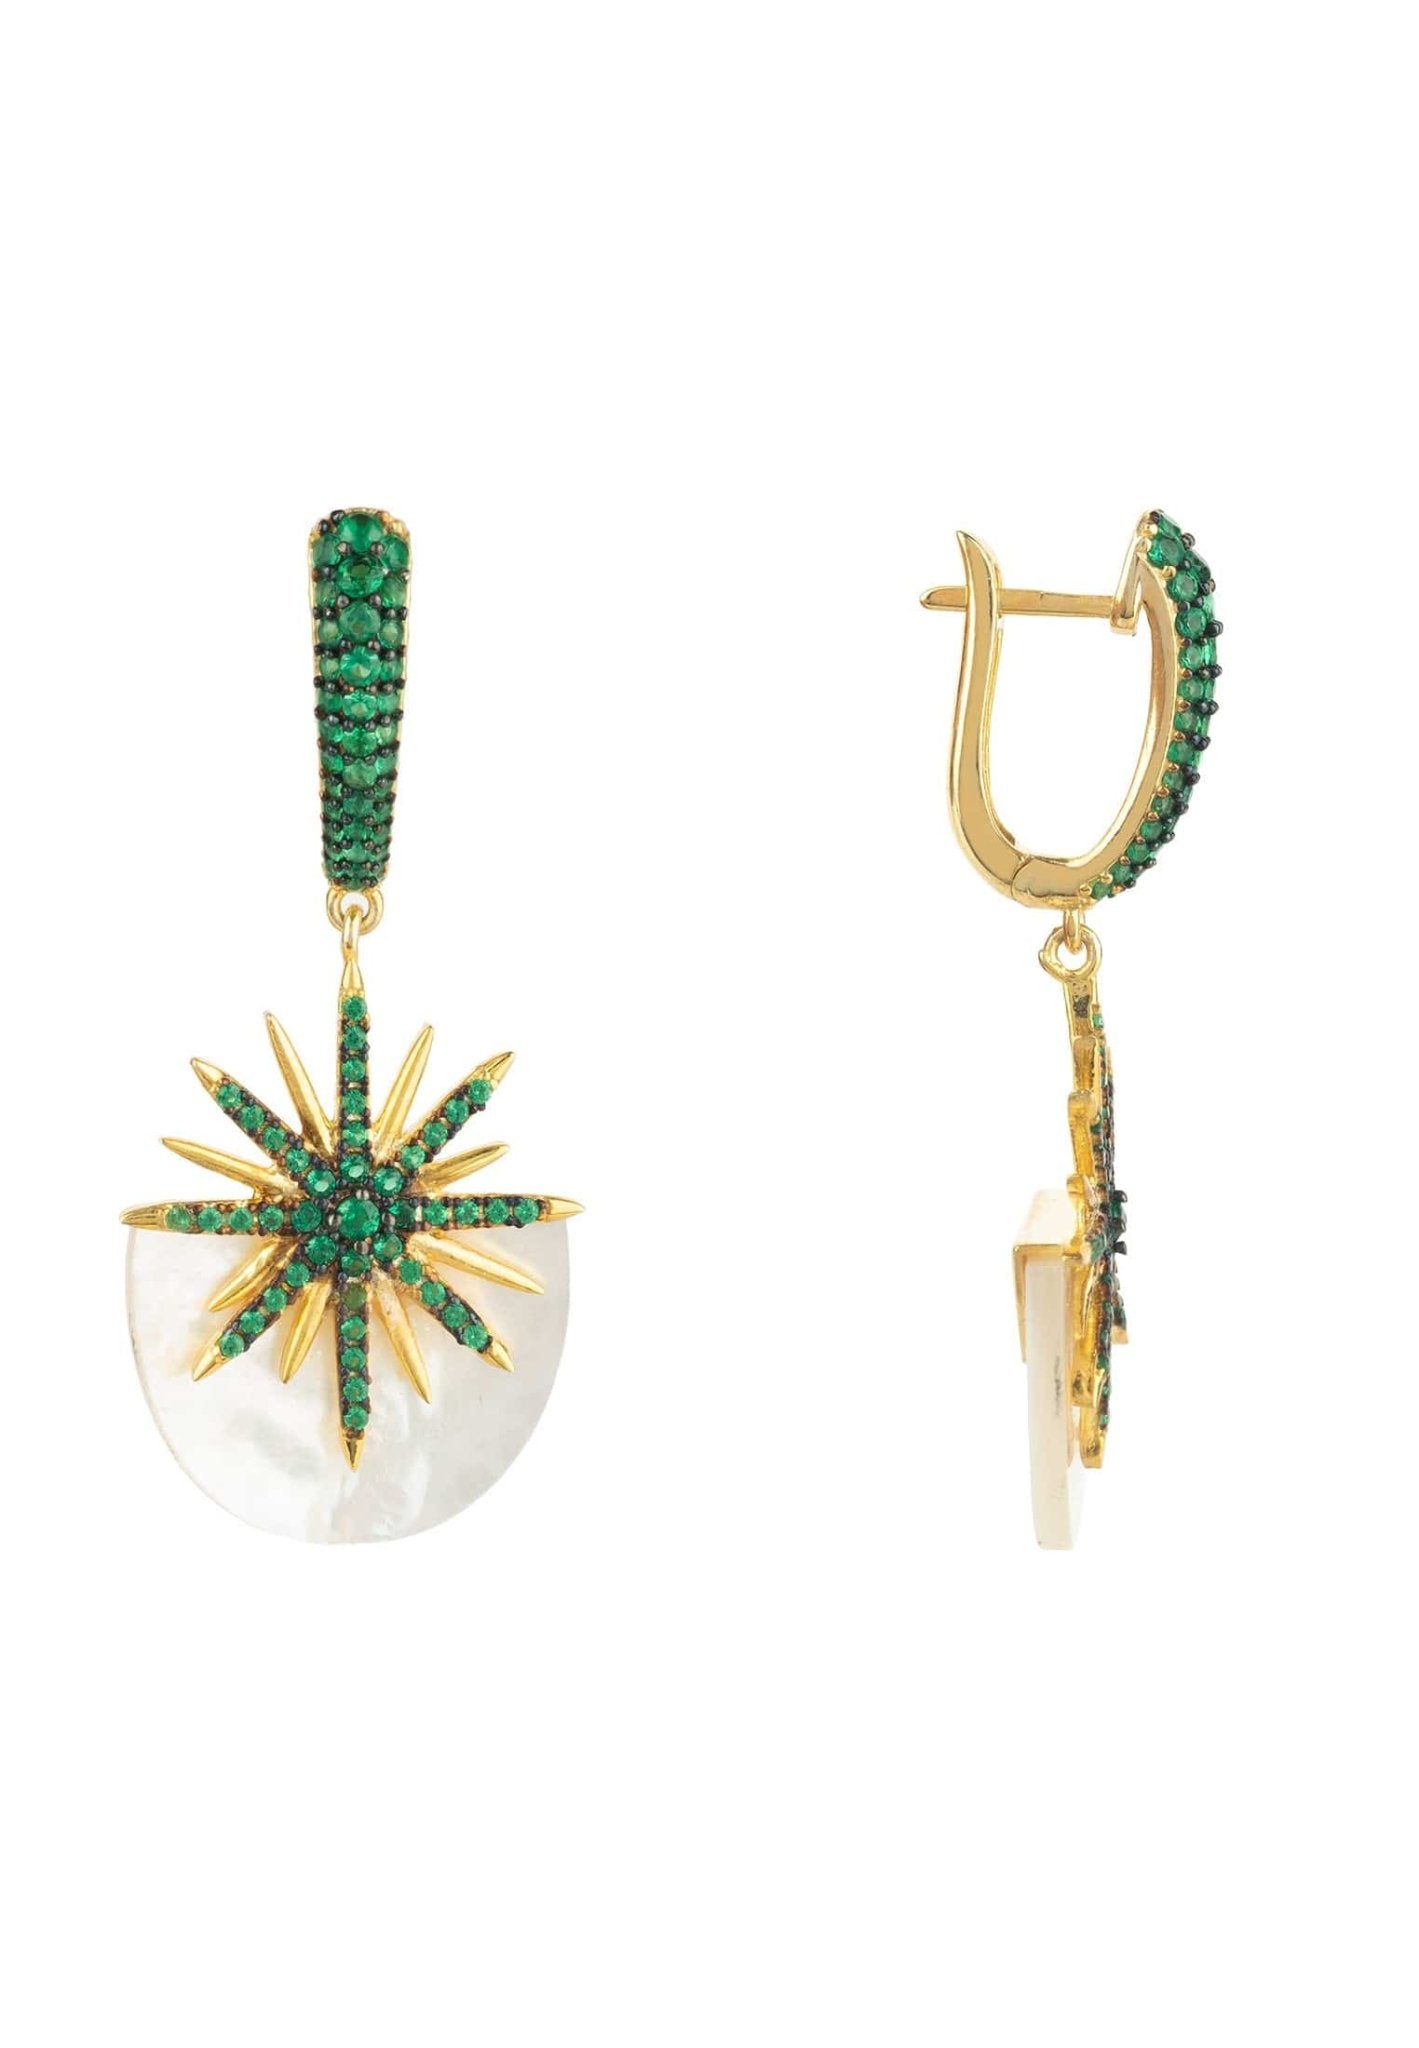 Sunburst White Mother Of Pearl Earrings Emerald Green Gold - LATELITA Earrings